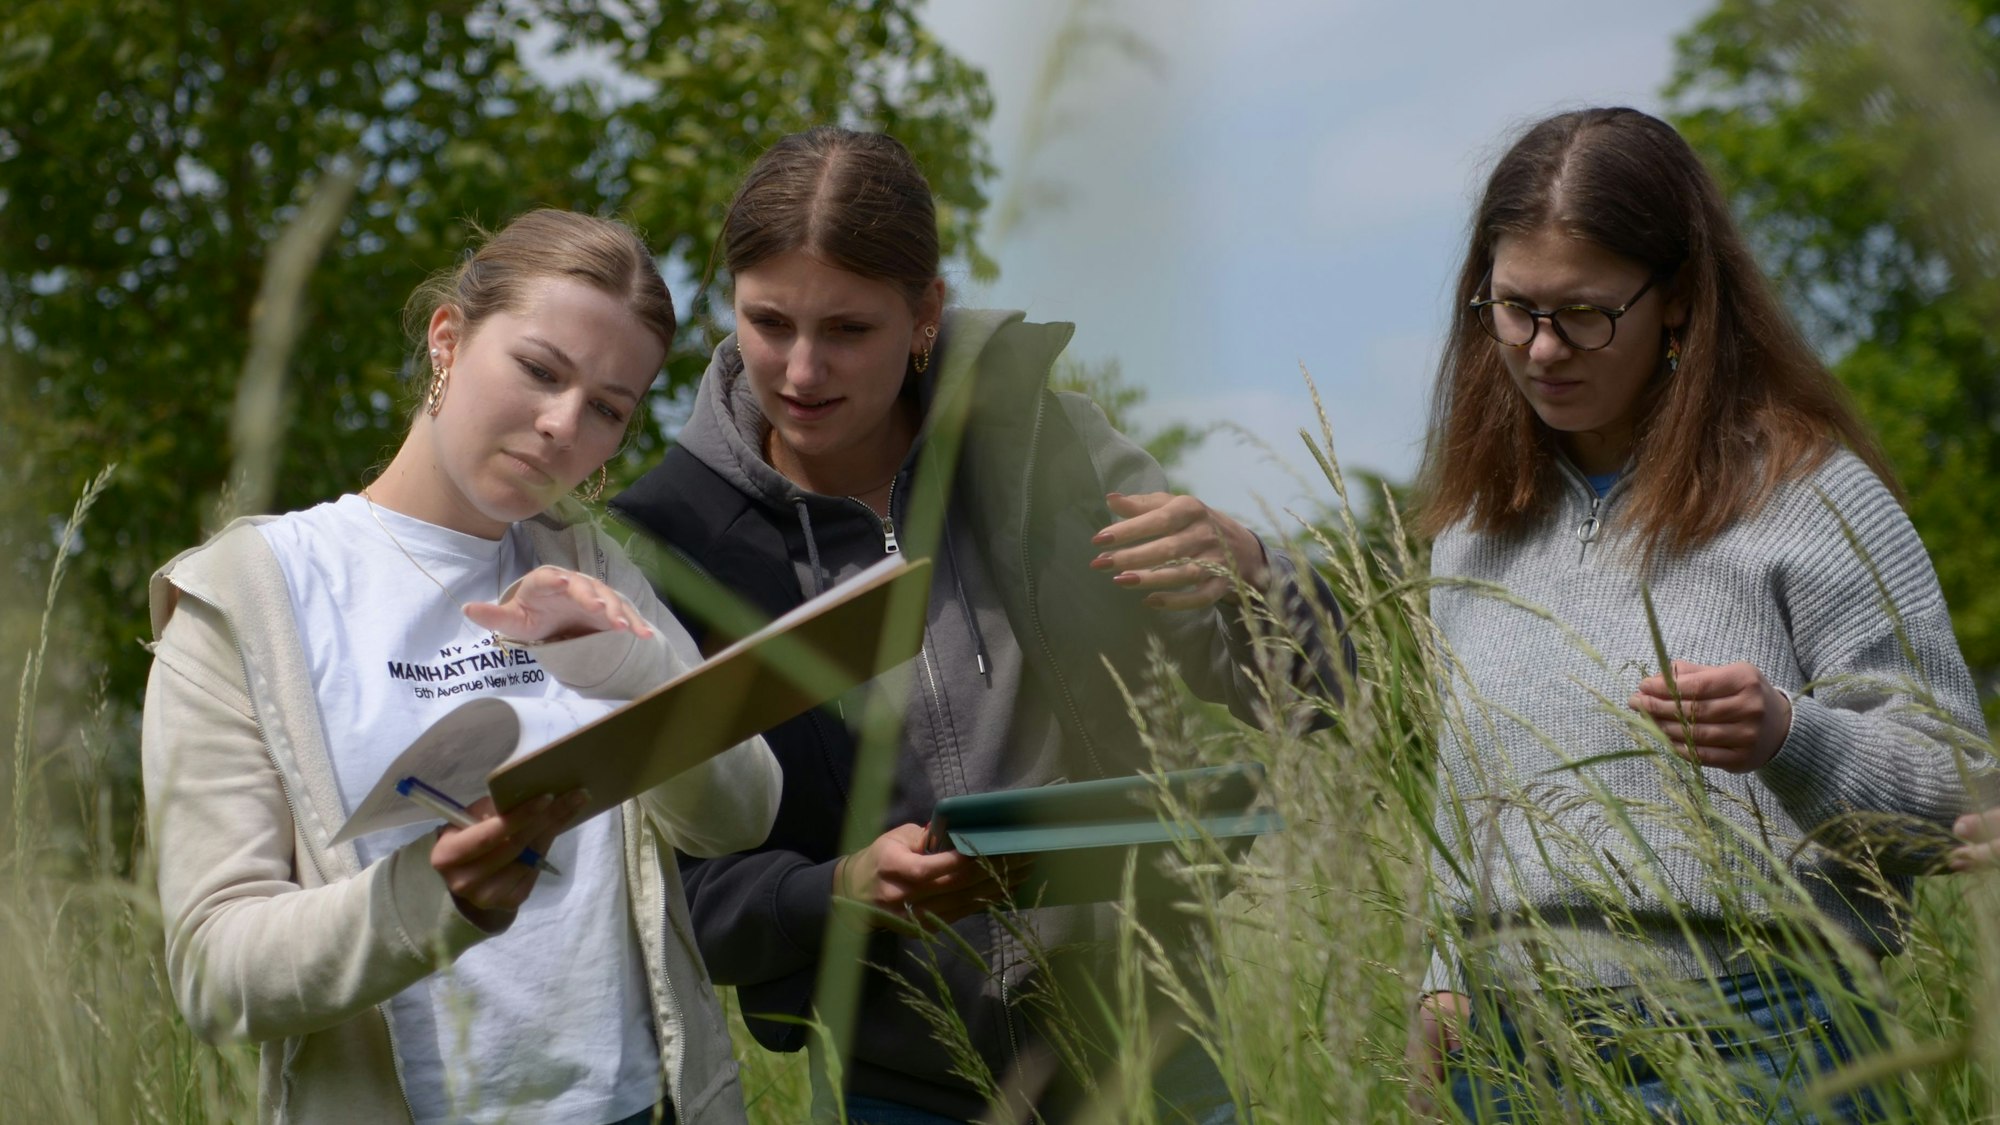 Das Bild zeigt drei Schülerinnen der elften Klasse, die im Rahmen eines Naturschutzprojekts mit Klemmbrettern auf einer Wiese mit hohen Gräsern unterwegs sind.